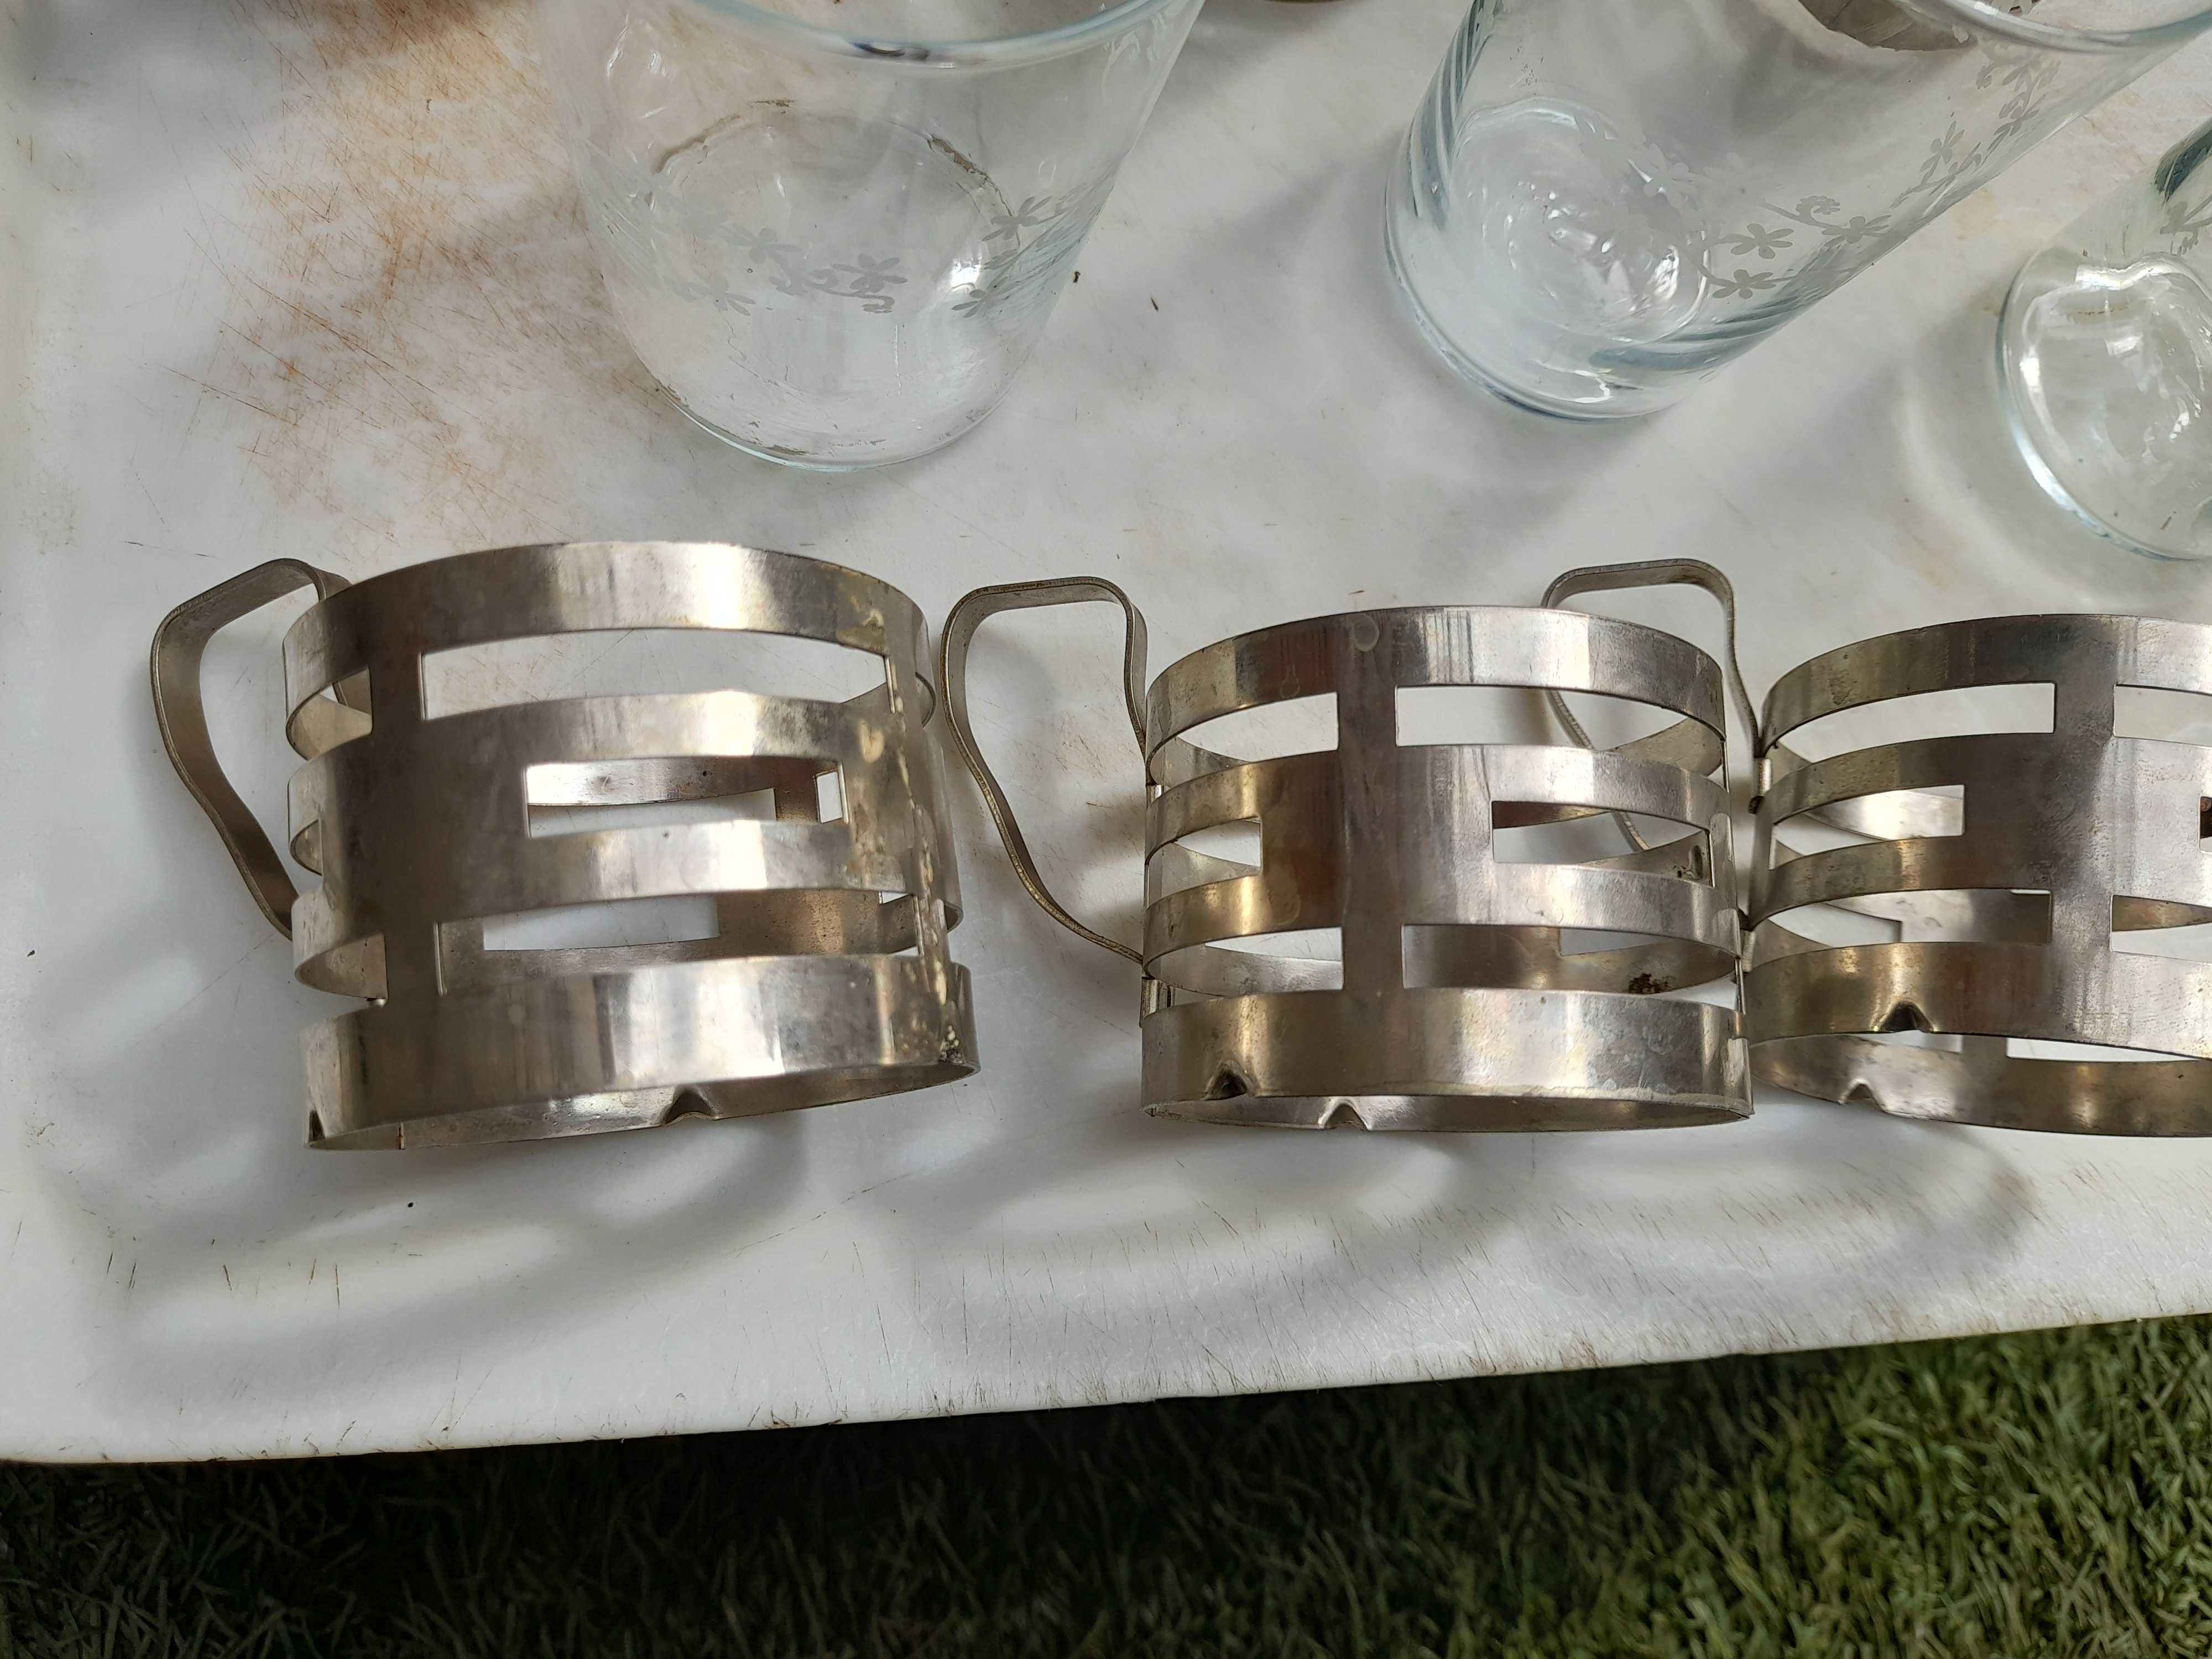 szesc szklanek w metalowych koszykach z czasow prl-u